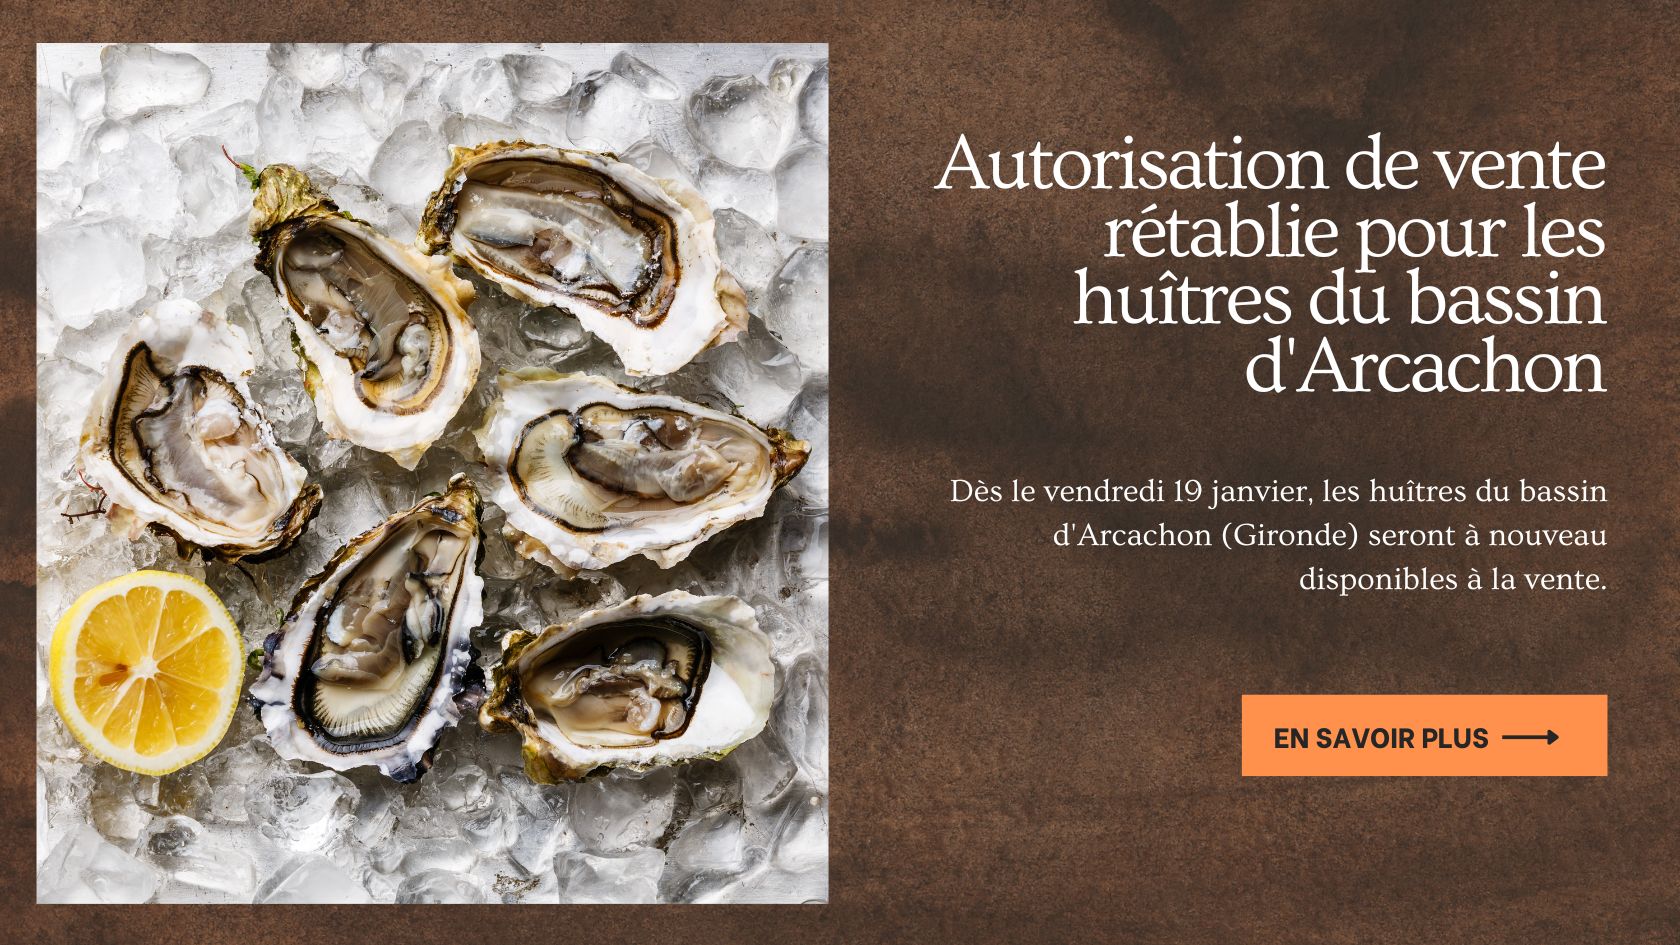 Autorisation de vente rétablie pour les huîtres du bassin d'Arcachon